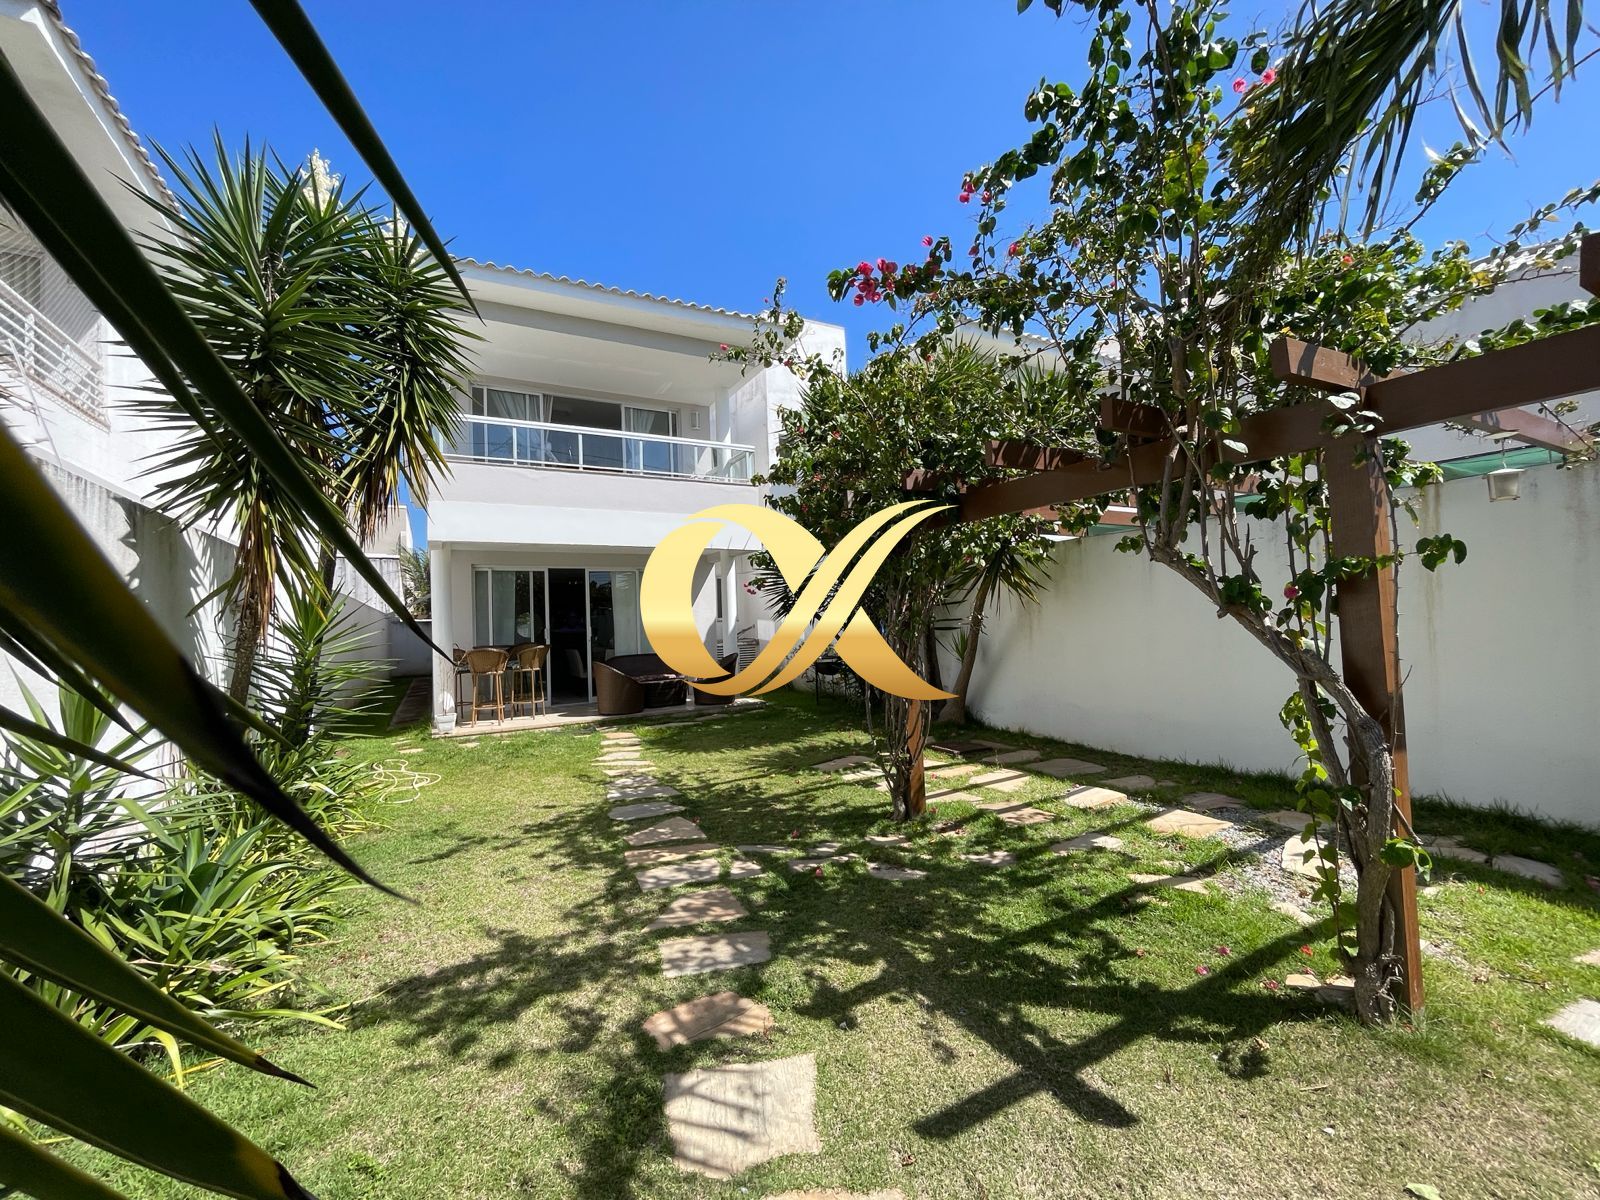 Casa  venda  no Novo Portinho - Cabo Frio, RJ. Imveis